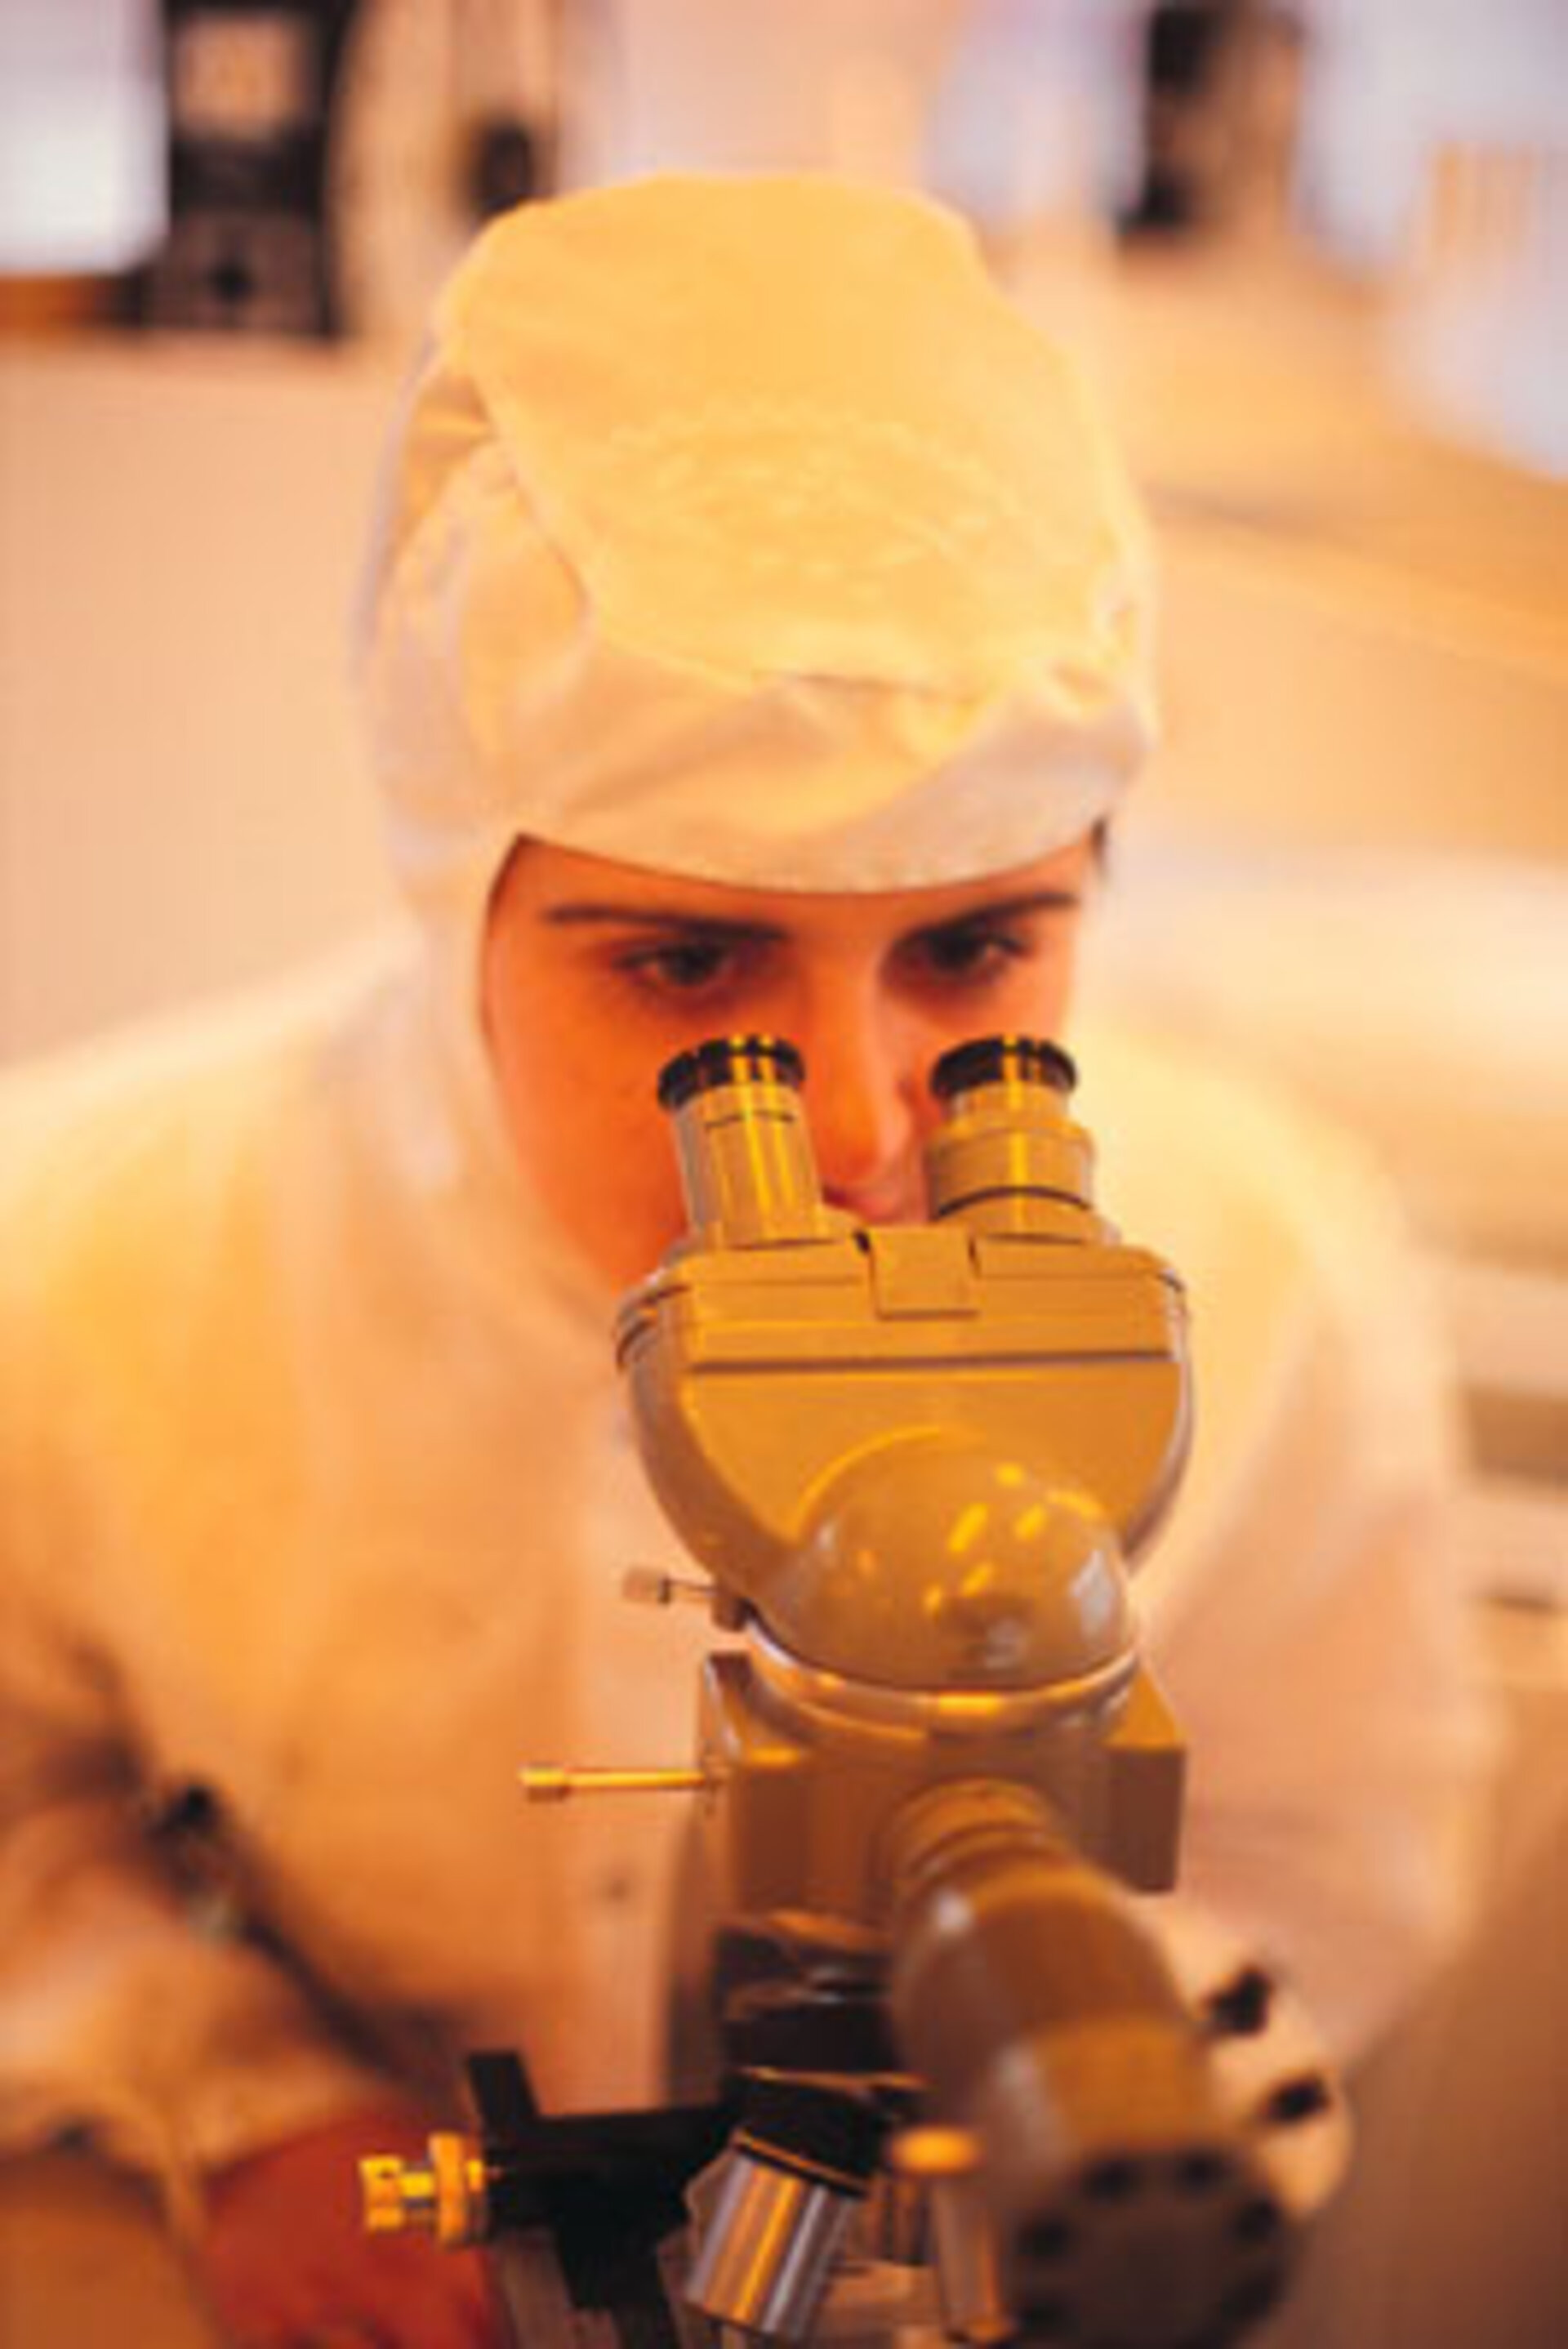 L’amélioration des équipements médicaux est un des débouchés possibles des recherches menées par l’ESA